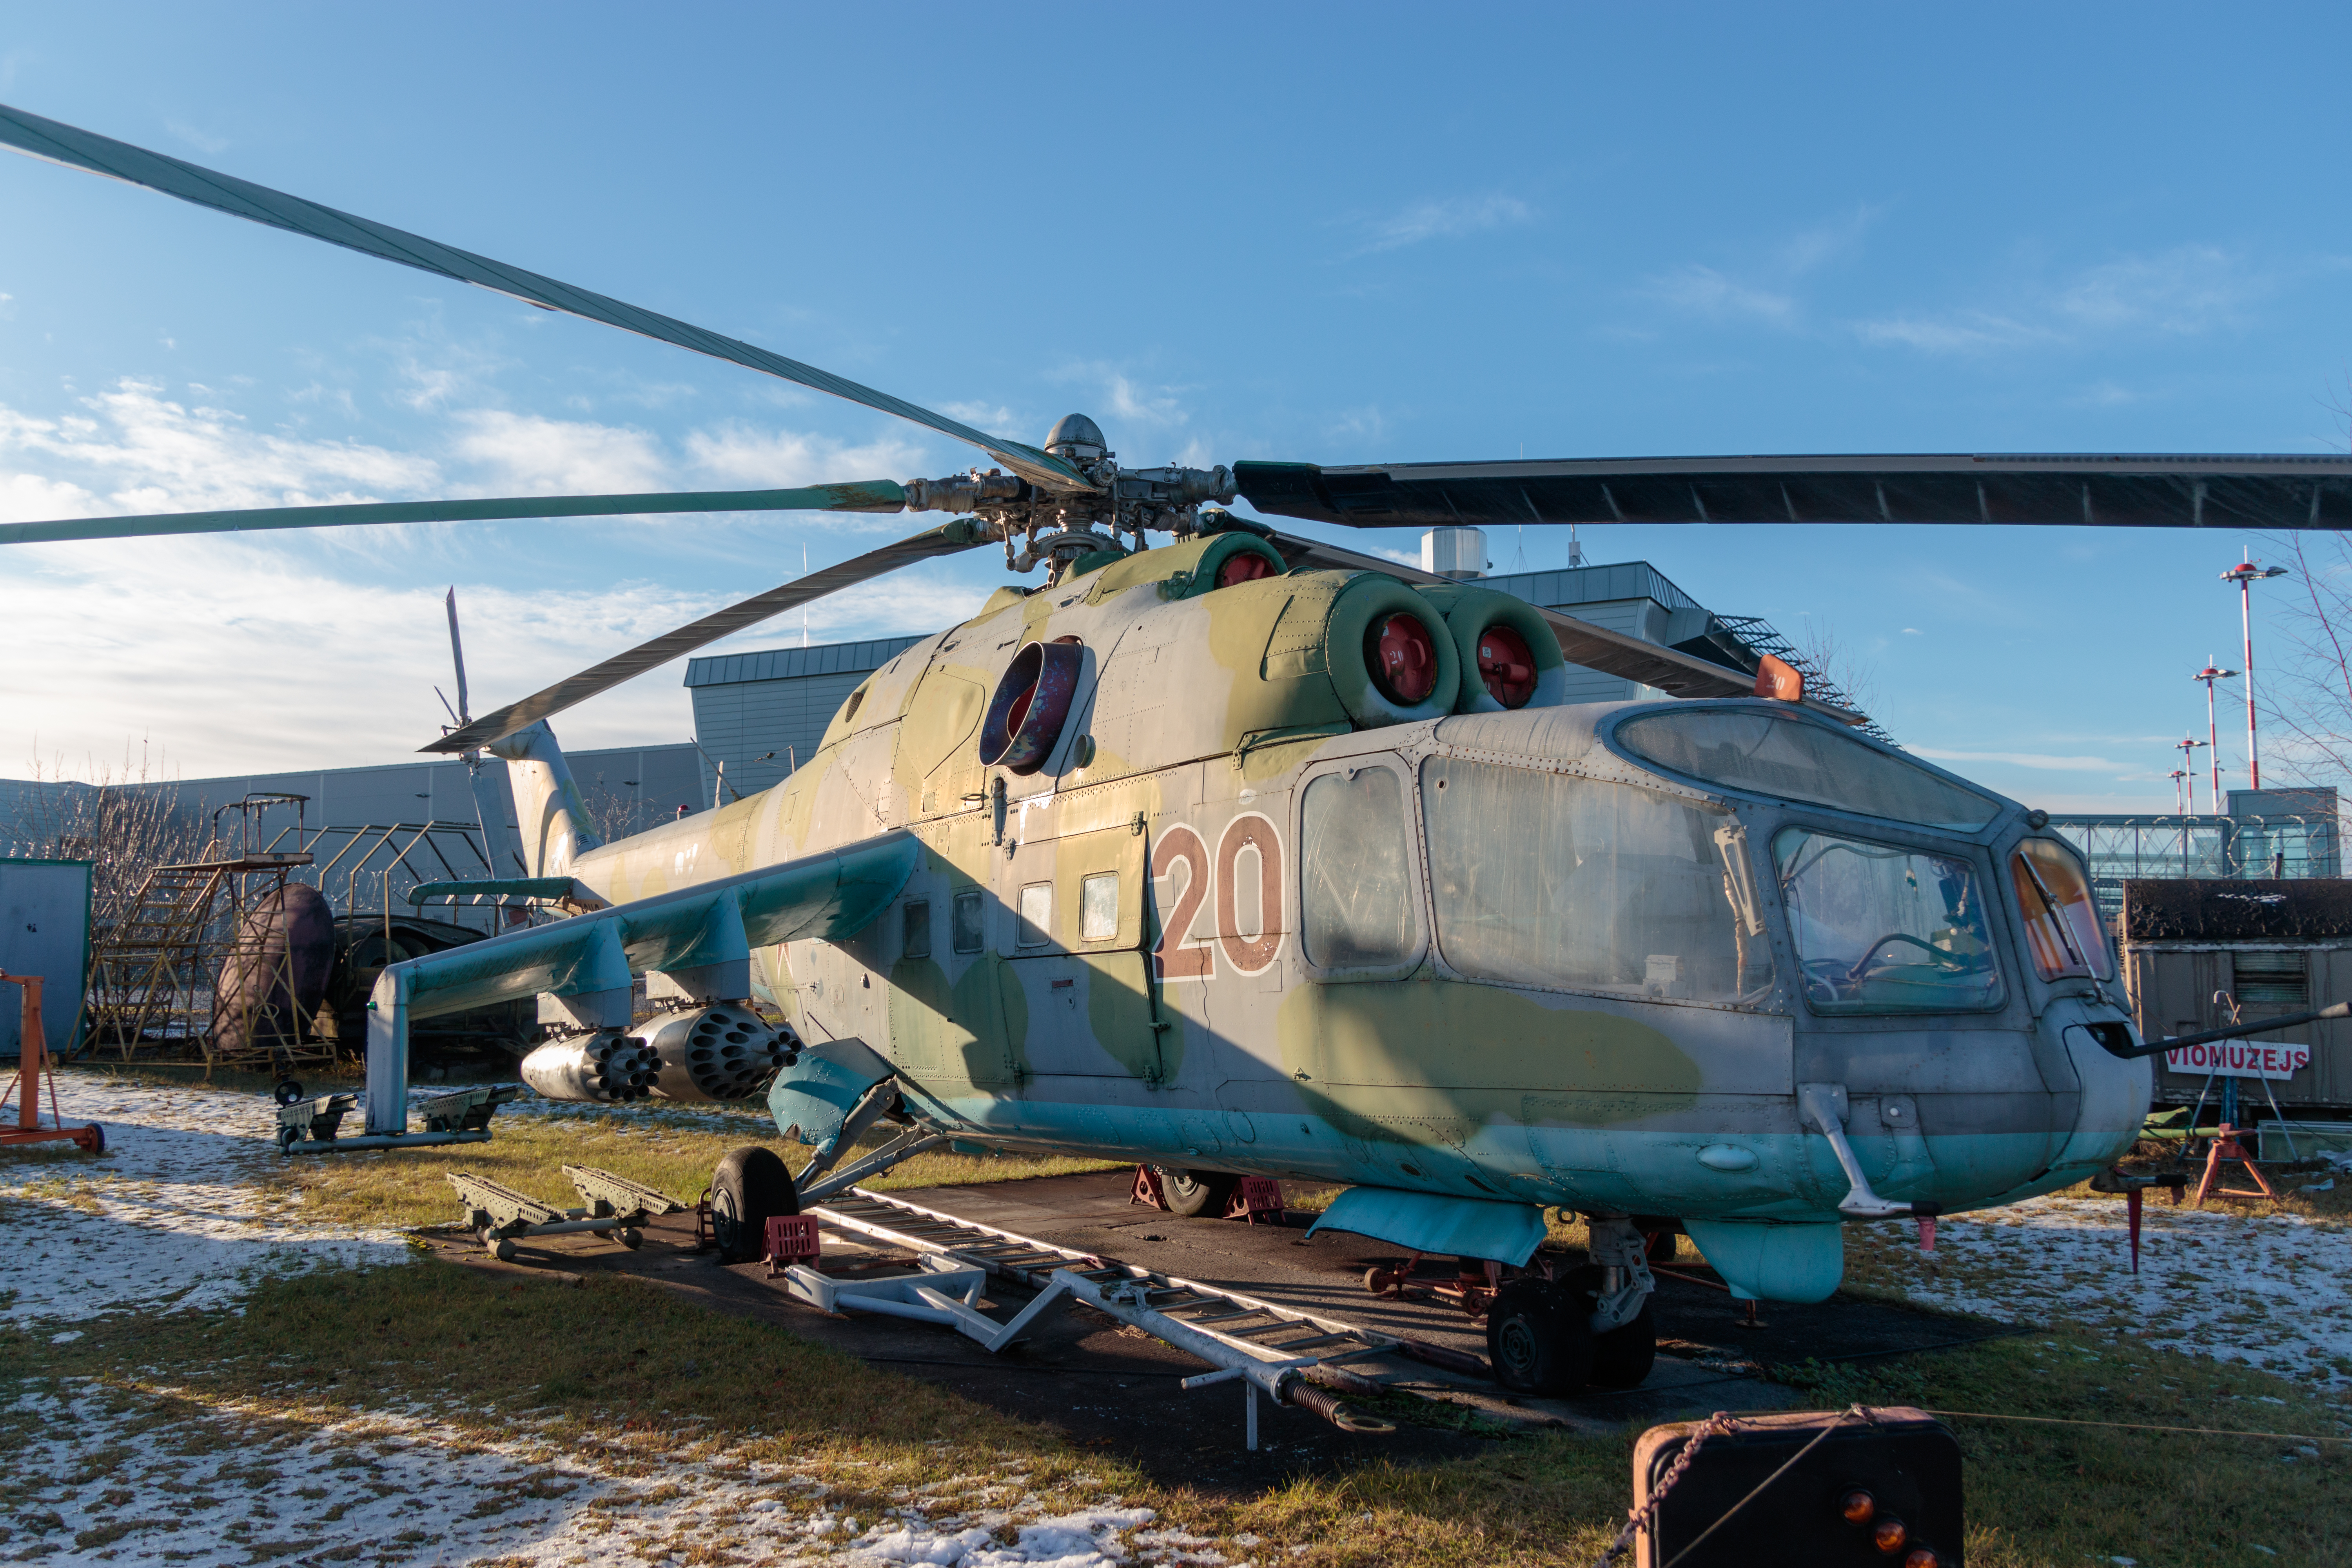 Руски вертолет Ми-24 се е разбил в Сирия. Пилотите загинали